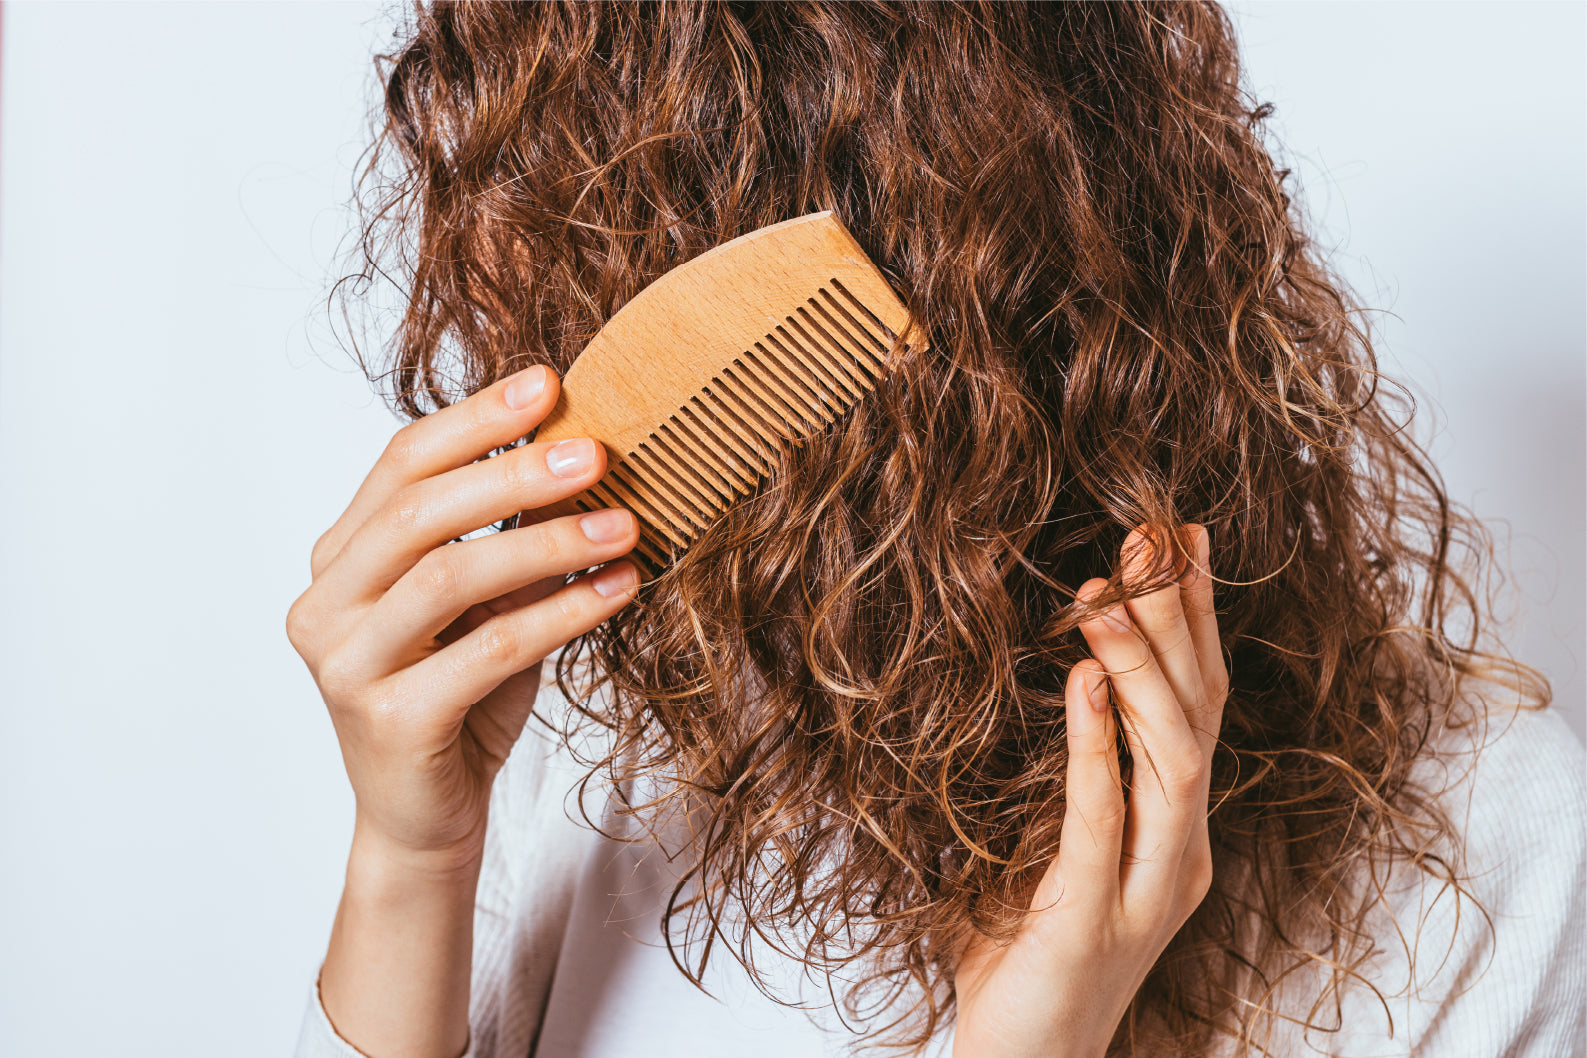 ¿Se te enreda el cabello constantemente? Conoce los errores más frecuentes que hace que tu cabello se enrede fácilmente